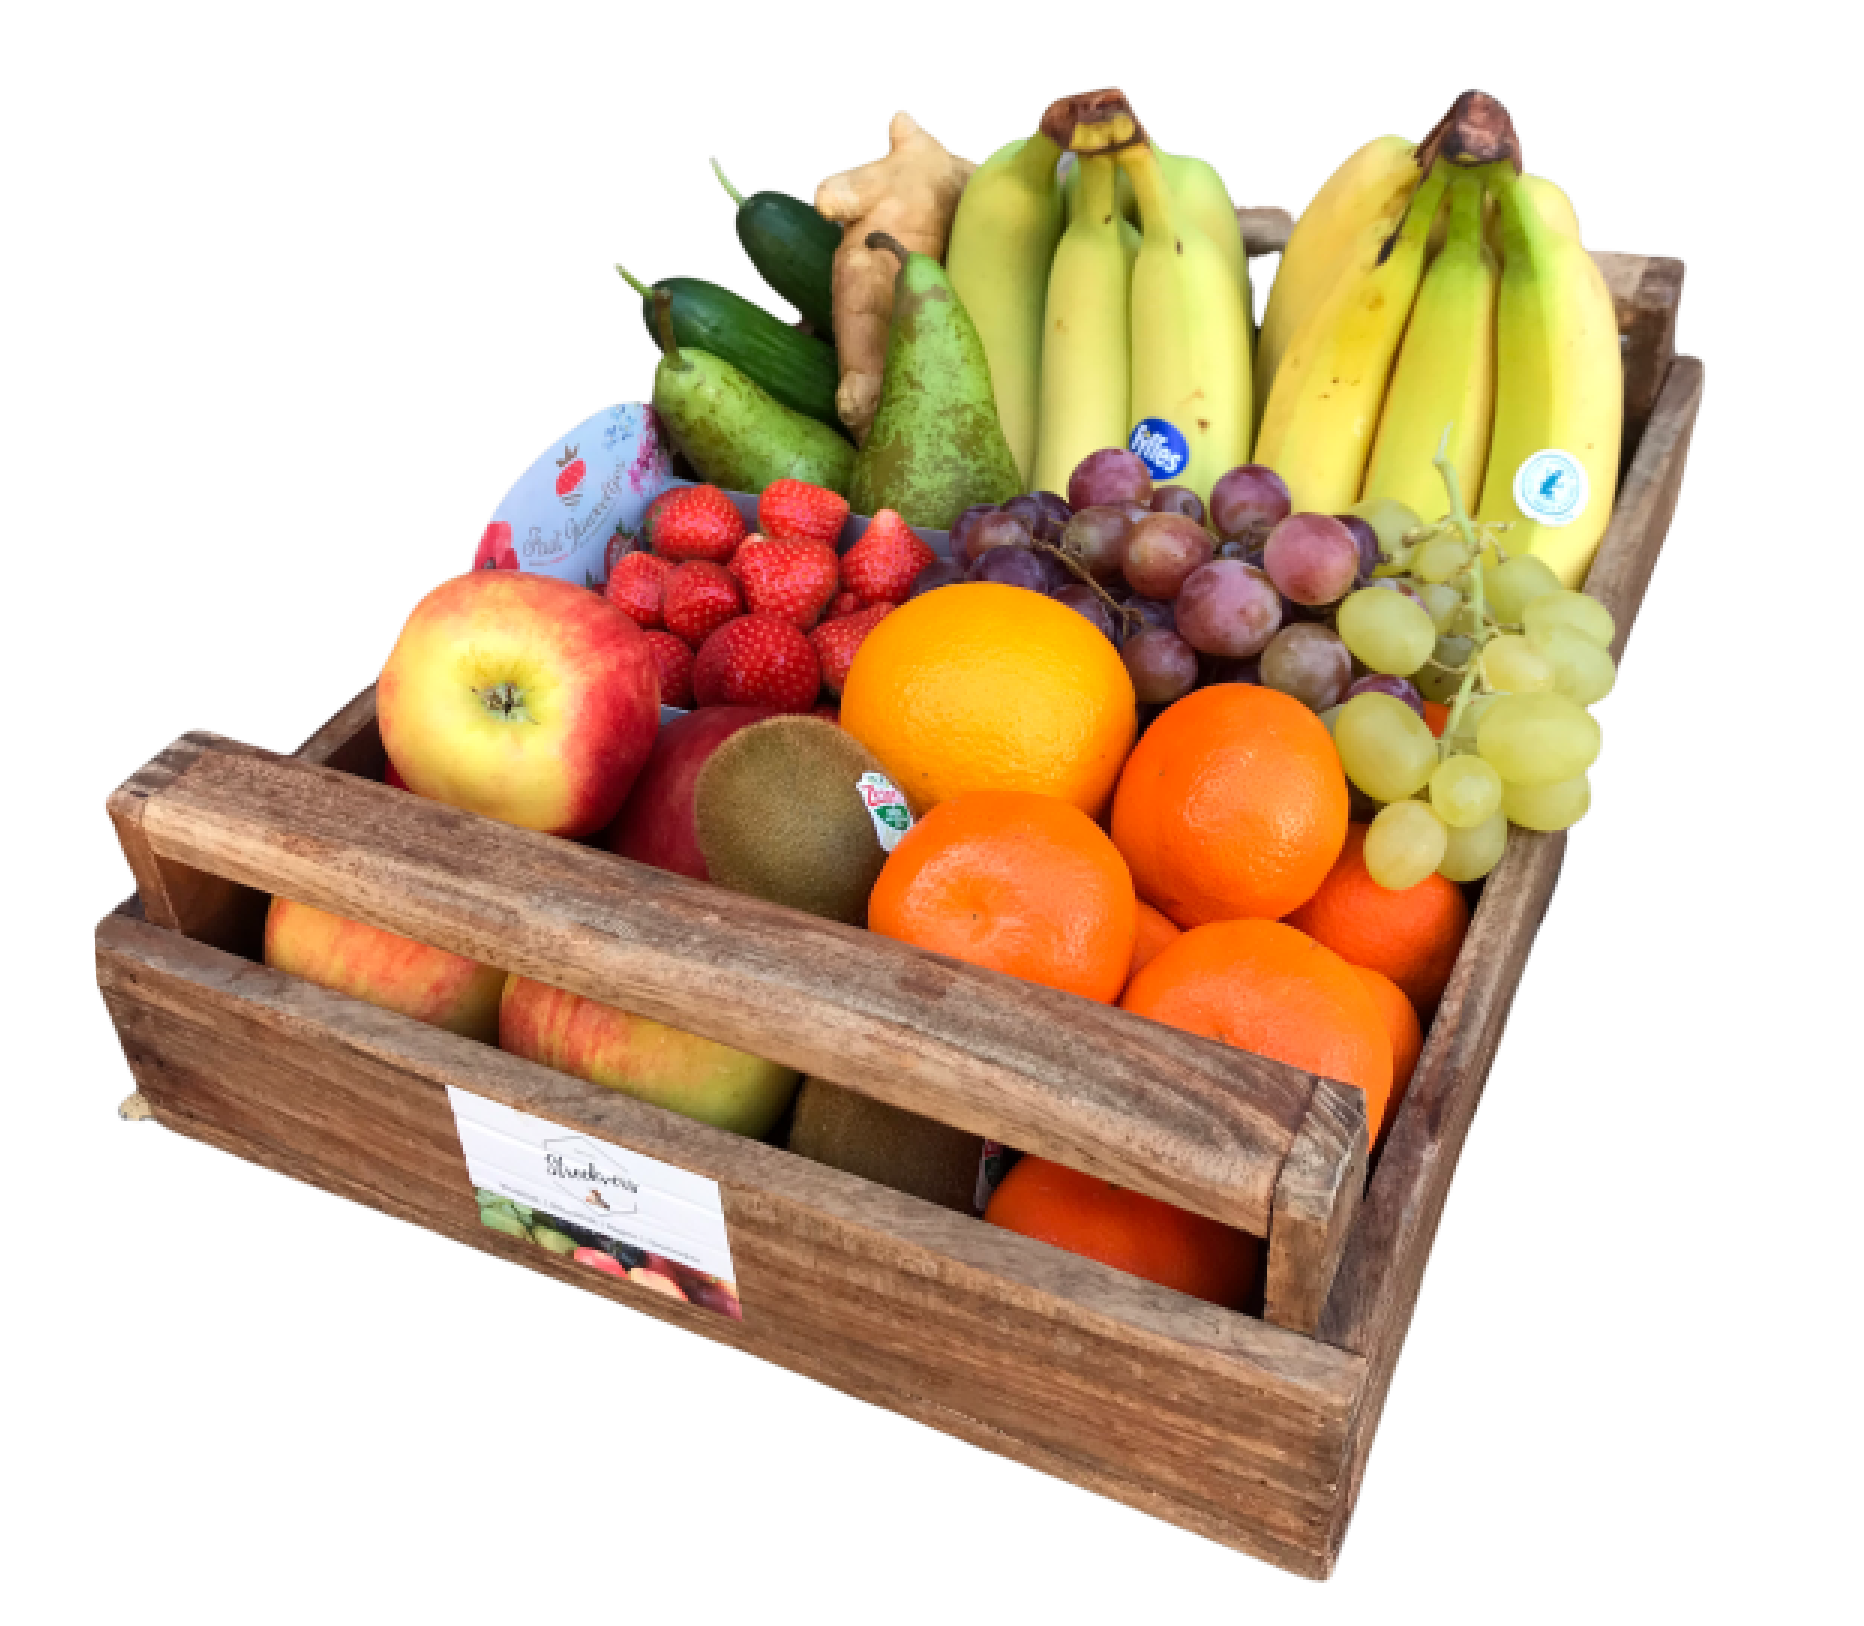 Streekvers fruitboxen bestellen online